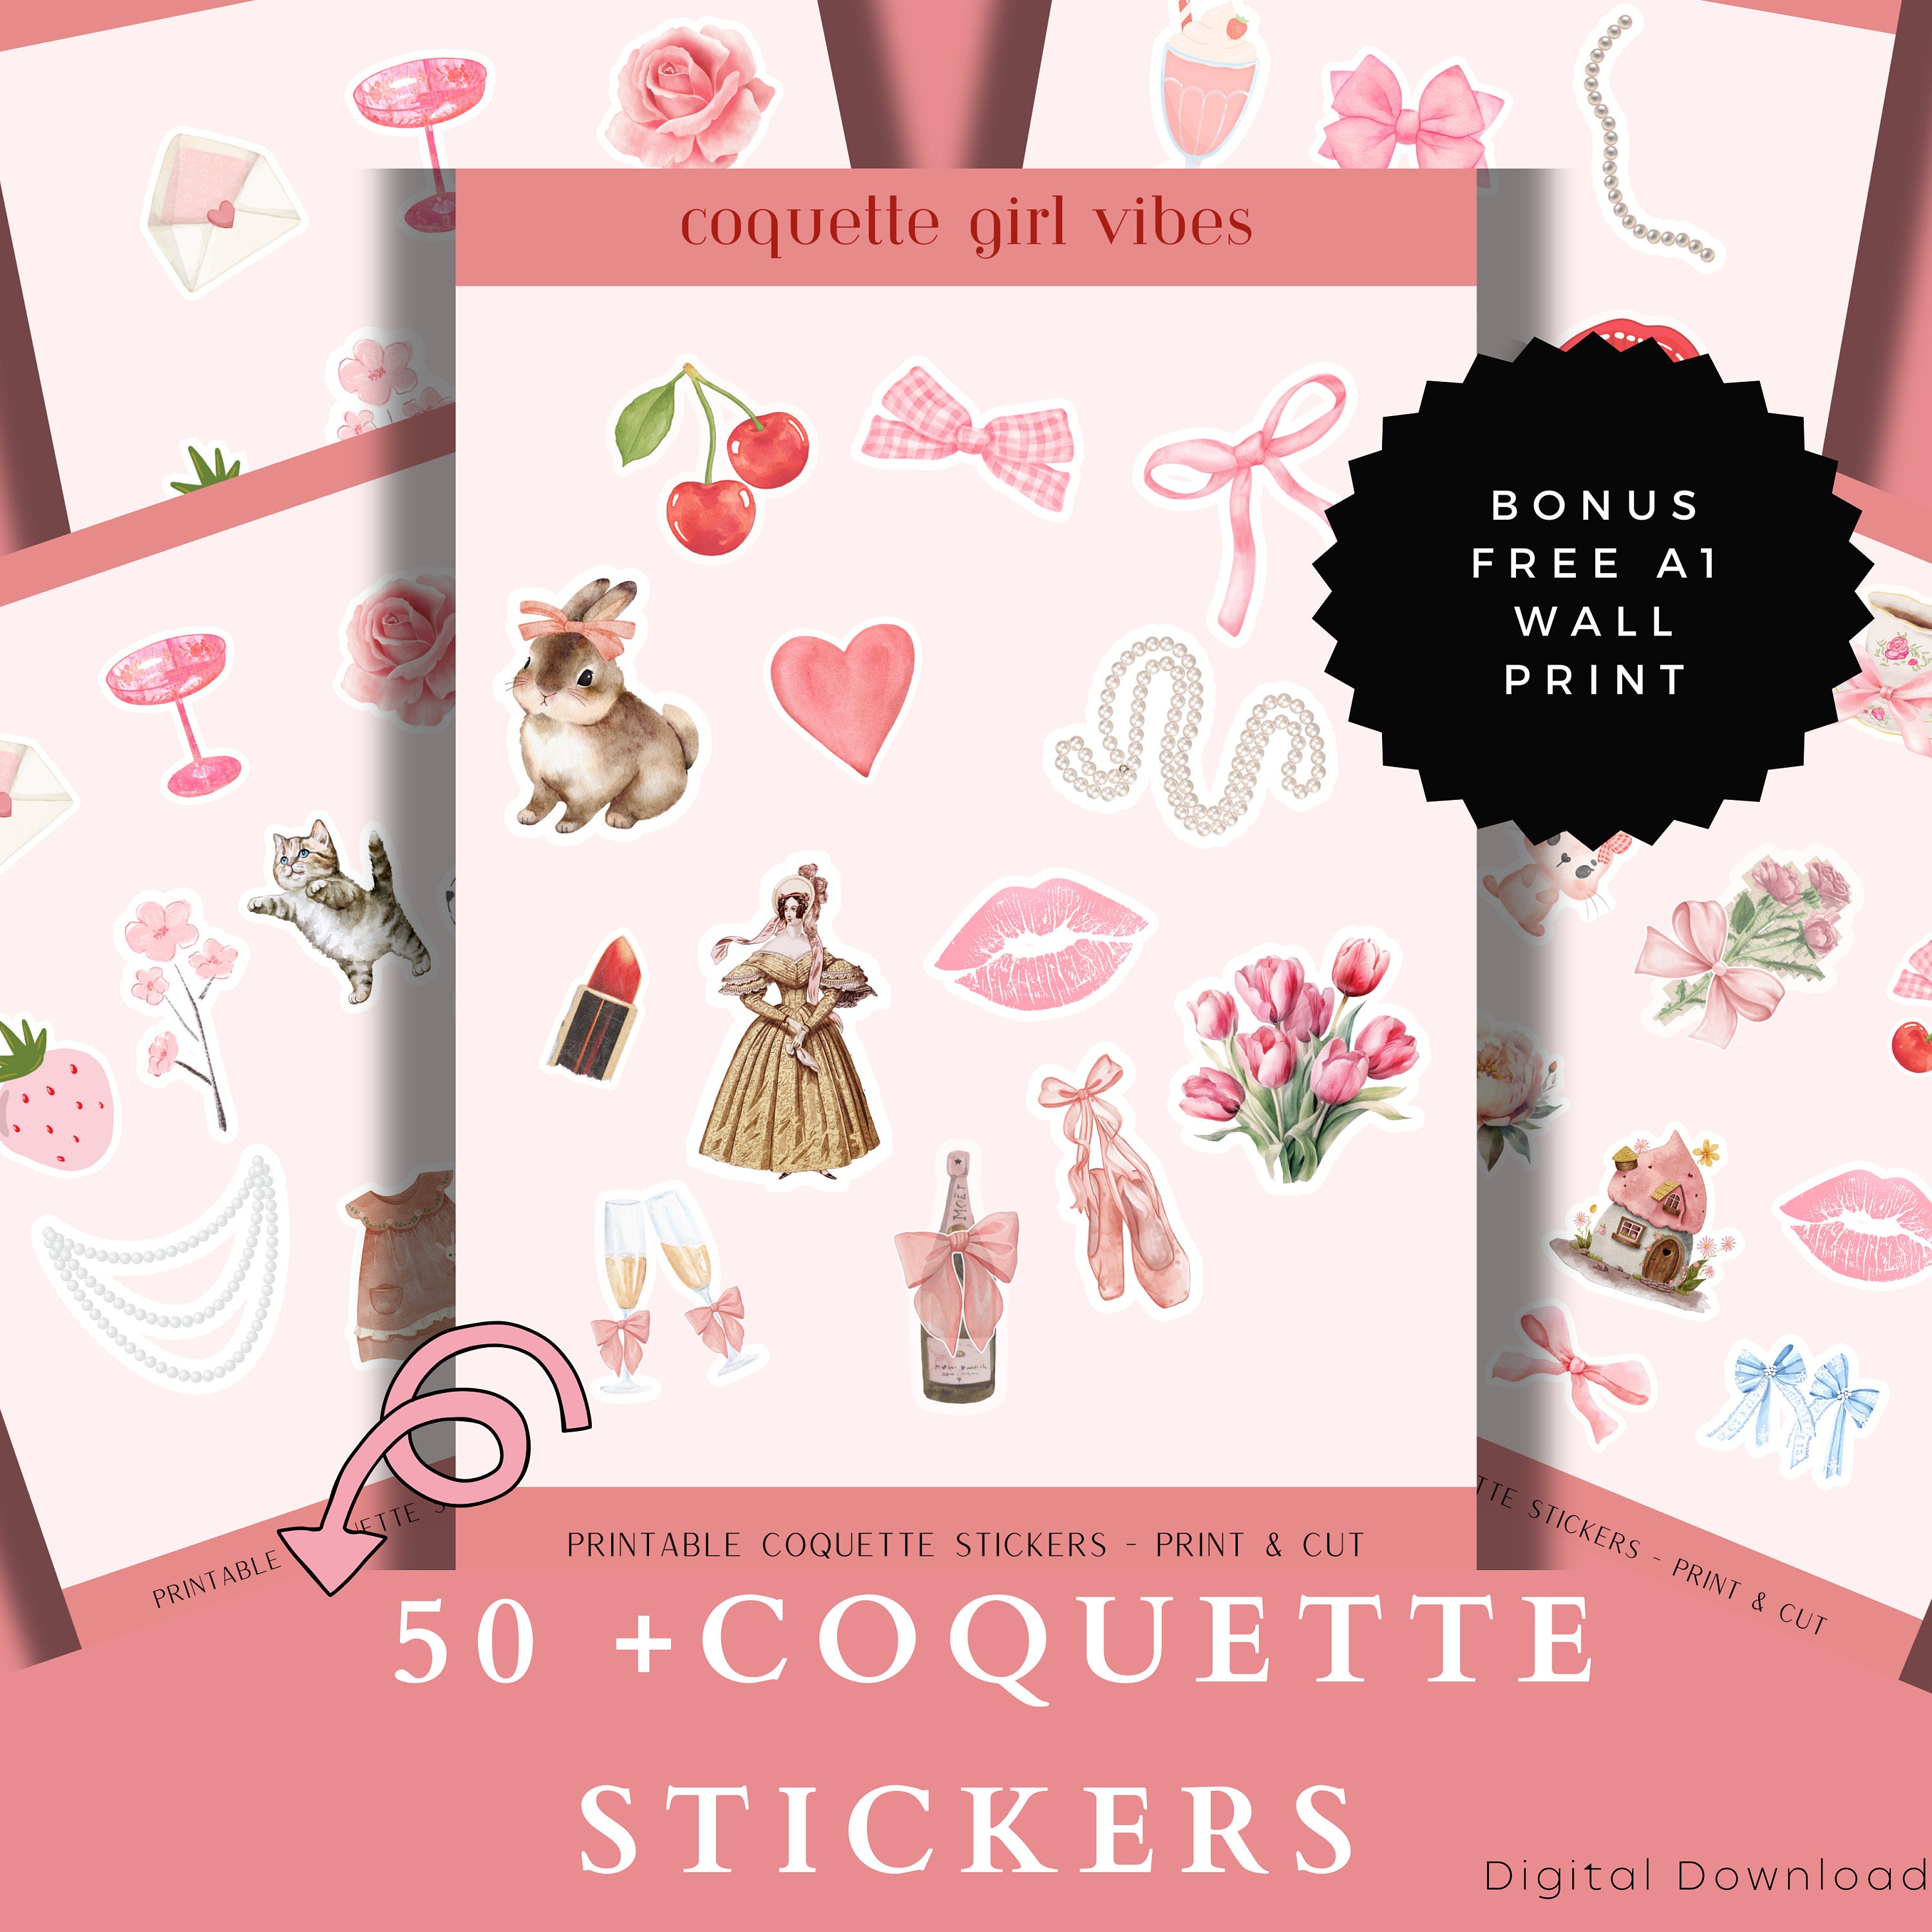 Petite Coquette Sticker by Wikiwakiwidow LLC - Pixels